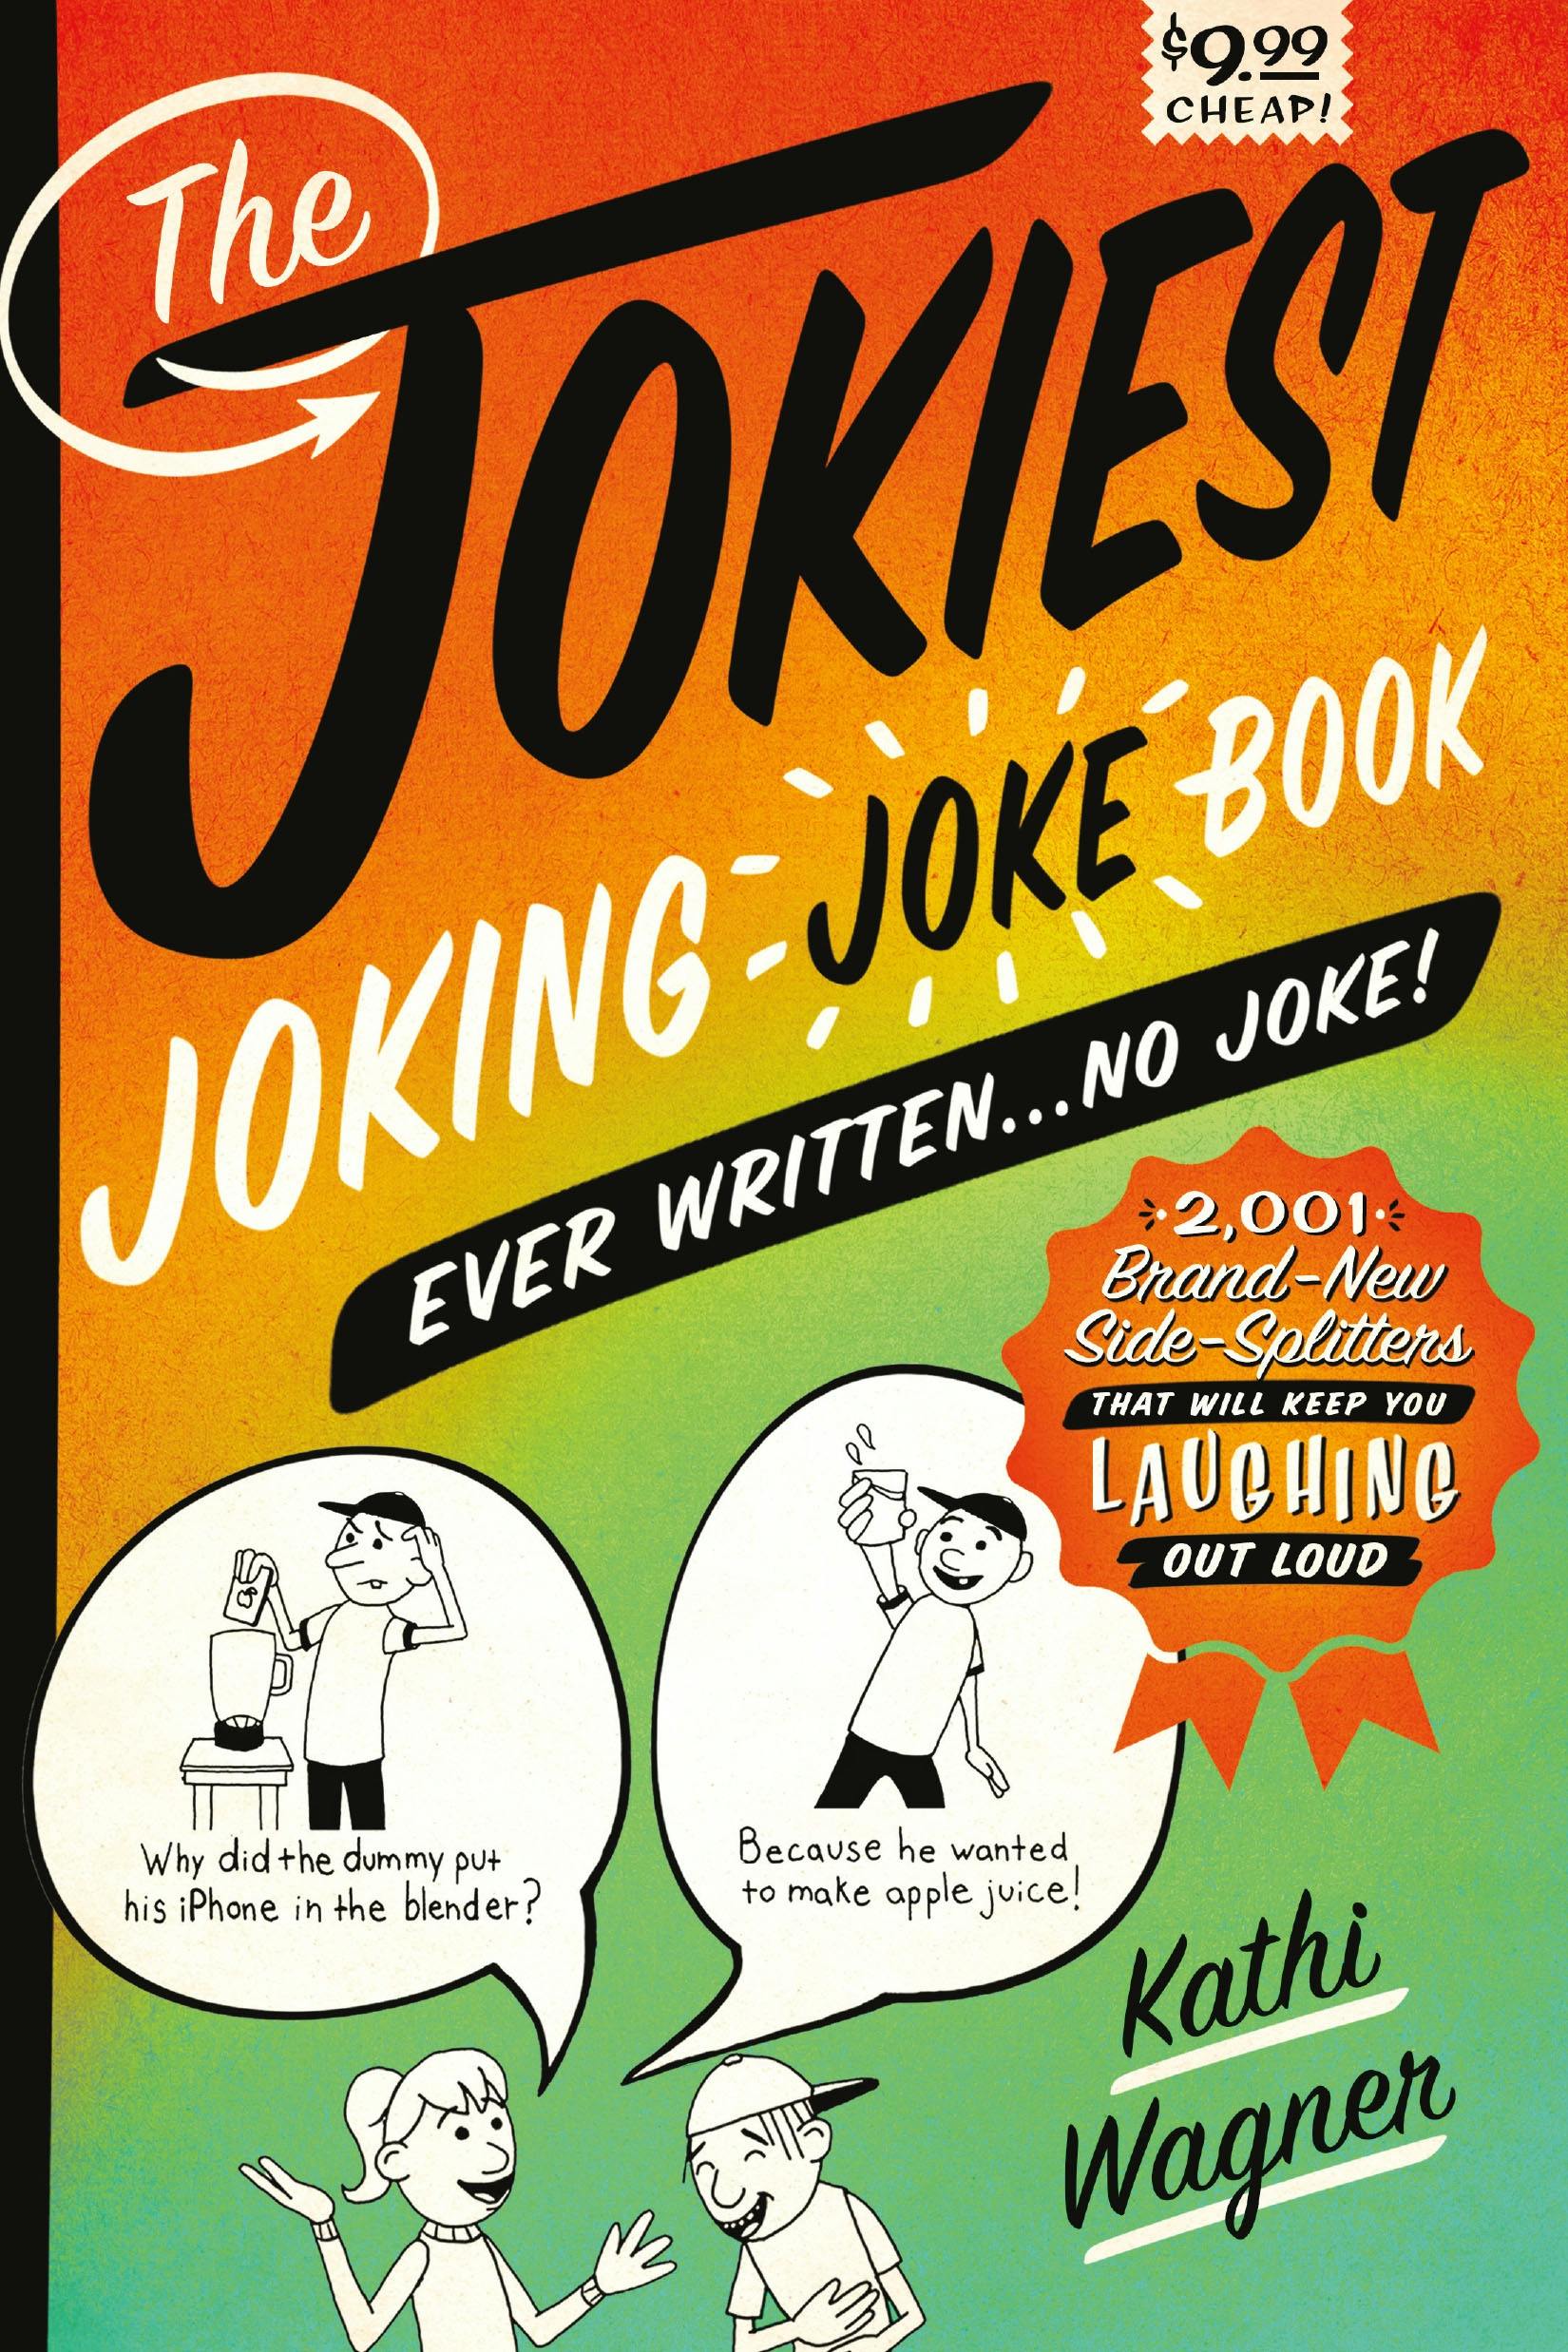 The Jokiest Joking Joke Book Ever Written . . . No Joke!